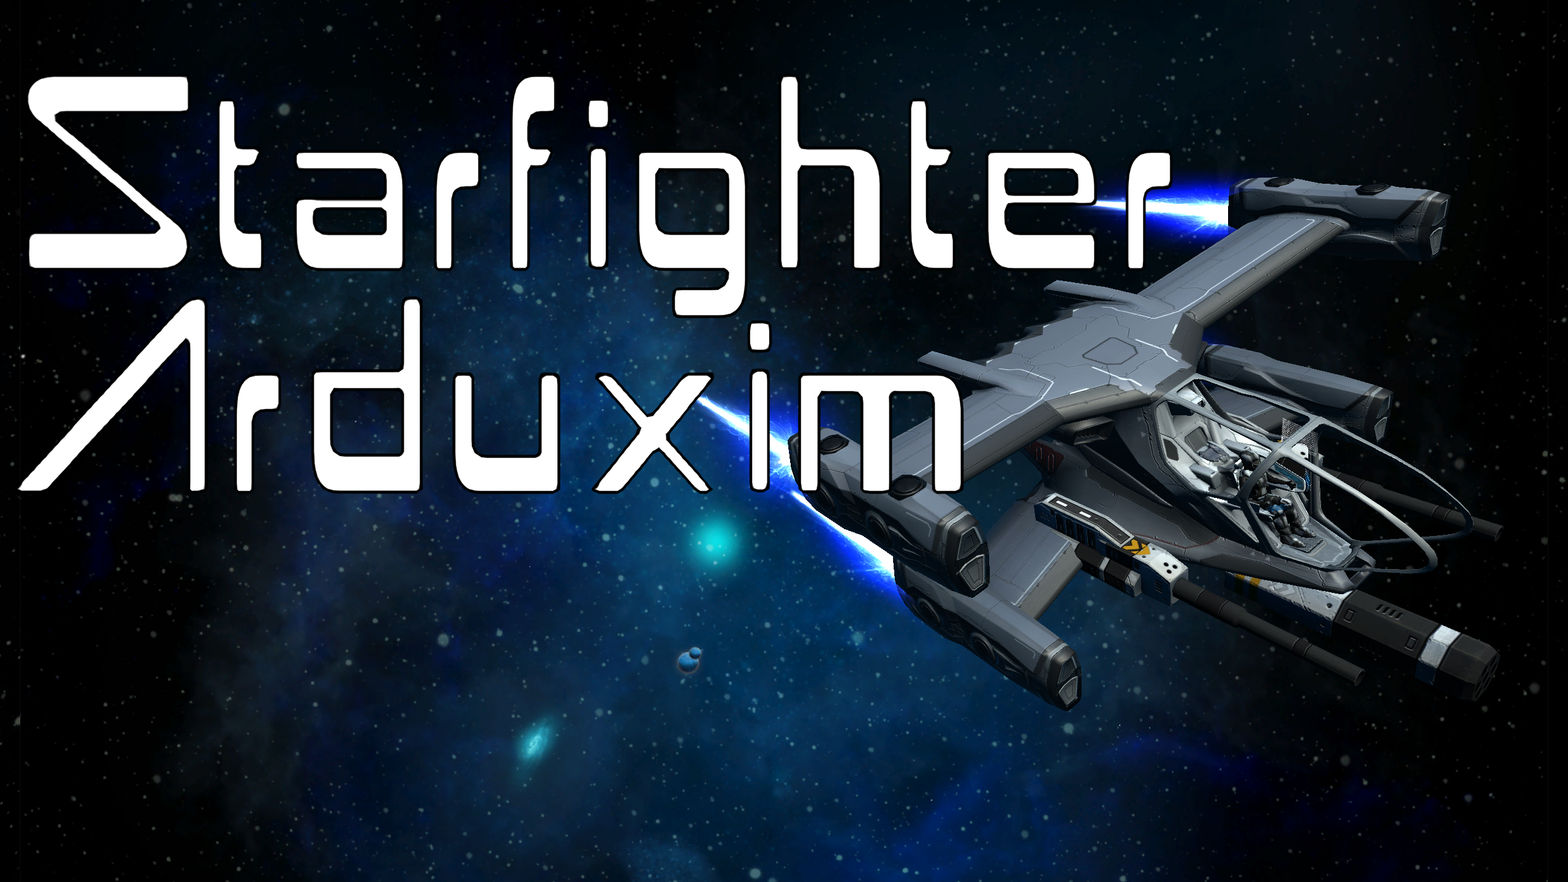 Starfighter Arduxim